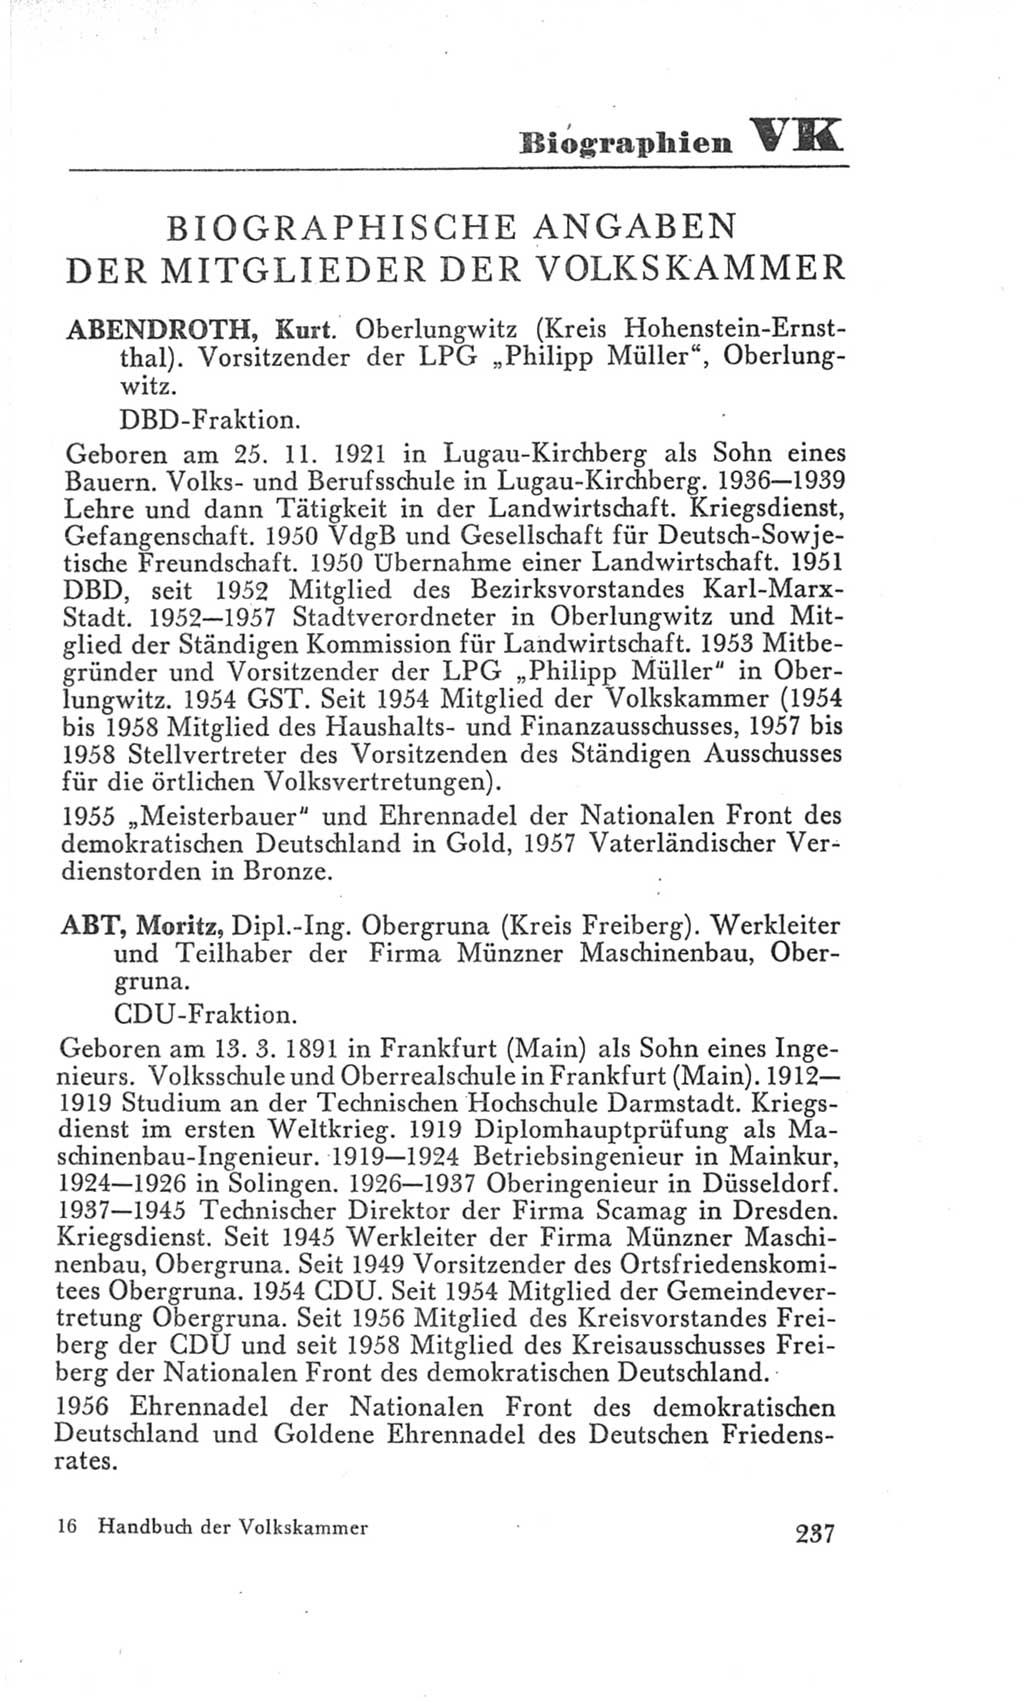 Handbuch der Volkskammer (VK) der Deutschen Demokratischen Republik (DDR), 3. Wahlperiode 1958-1963, Seite 237 (Hdb. VK. DDR 3. WP. 1958-1963, S. 237)